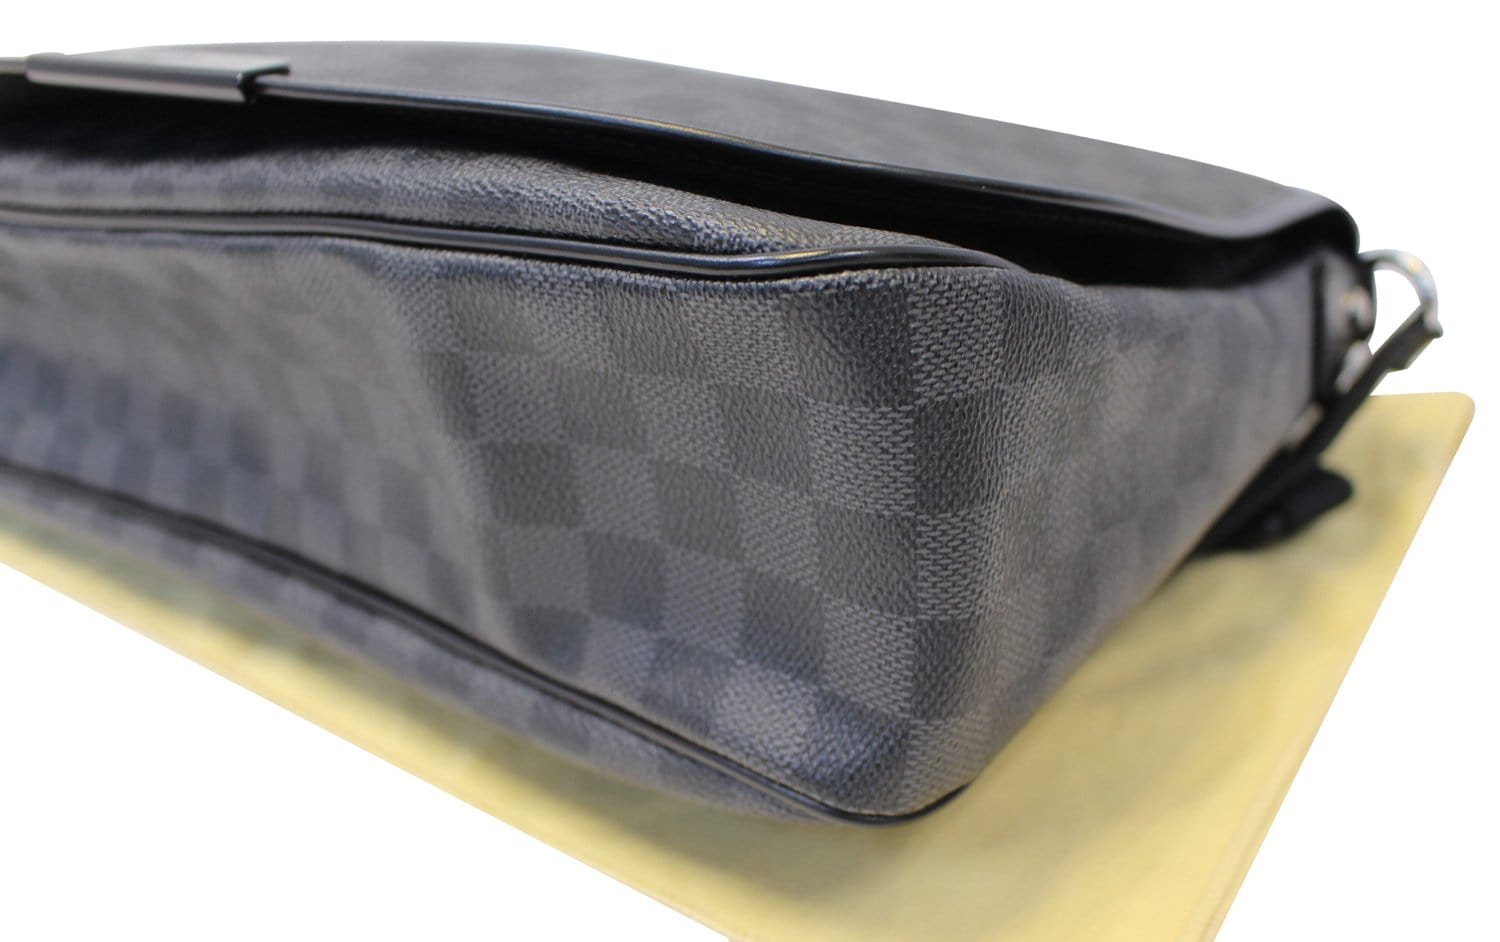 Louis Vuitton Daniel GM Damier Graphite Messenger Bag on SALE